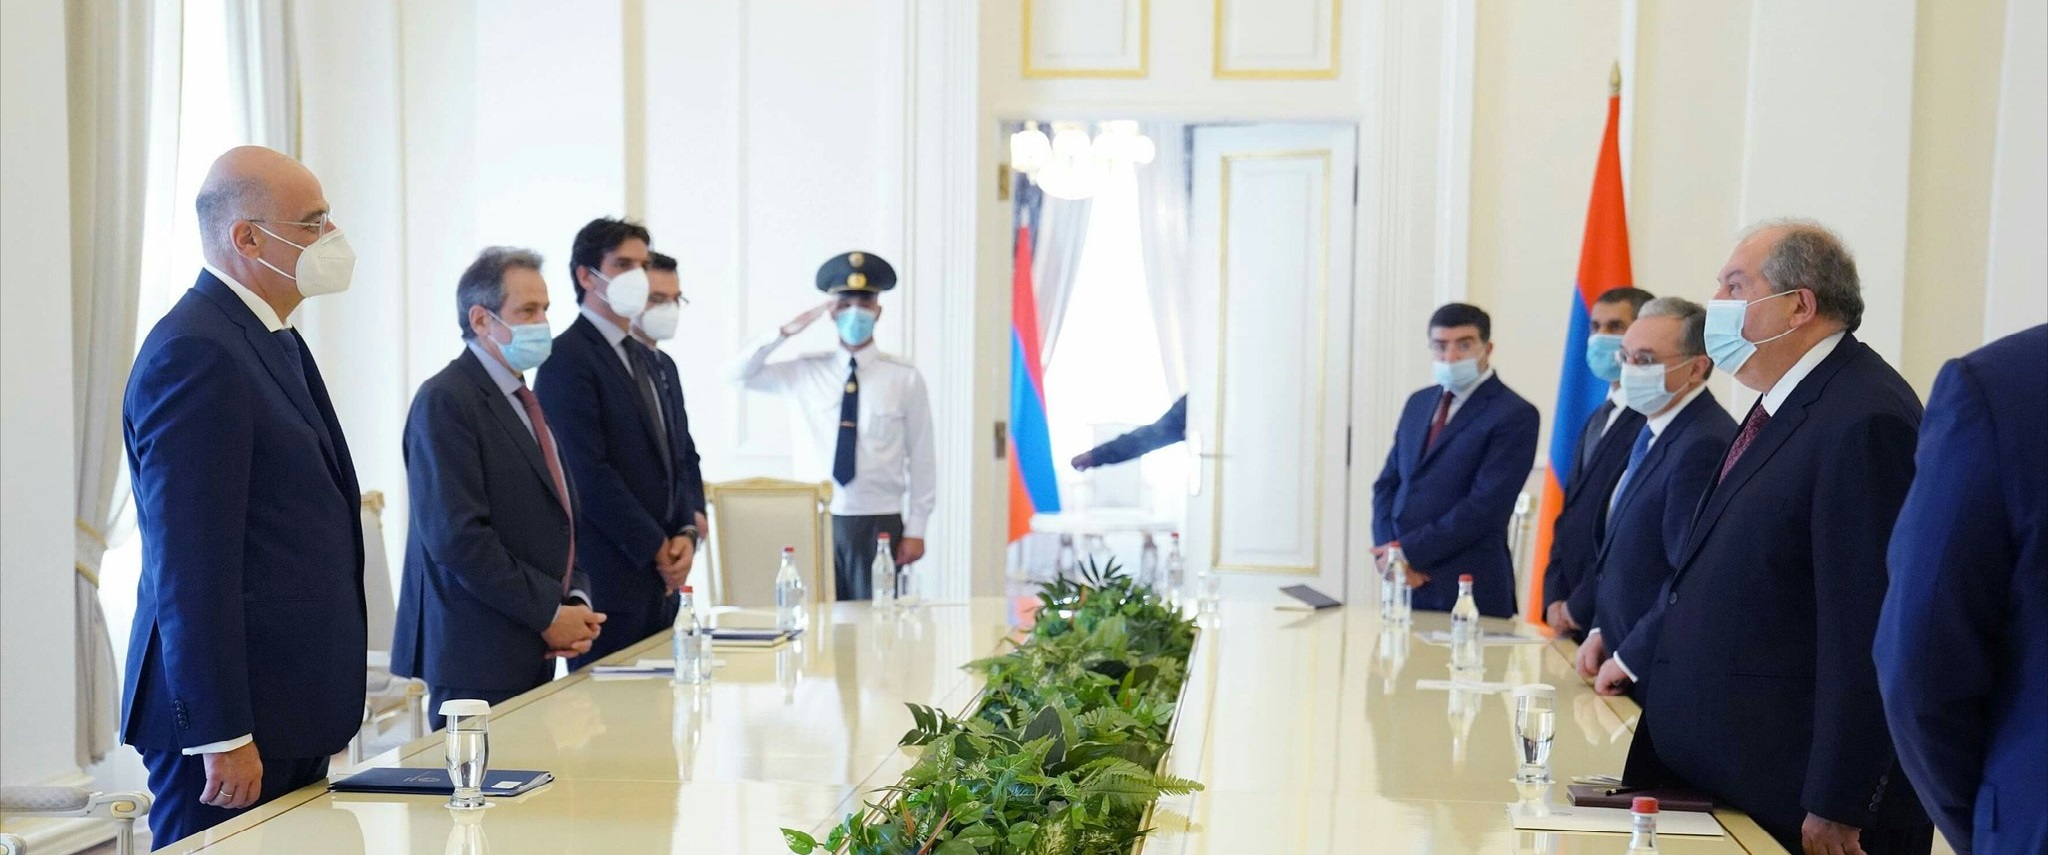 Ν.Δένδιας: Συναντήθηκε με τον πρόεδρο και τον πρωθυπουργό της Αρμενίας – Τι συζήτησαν (φώτο)